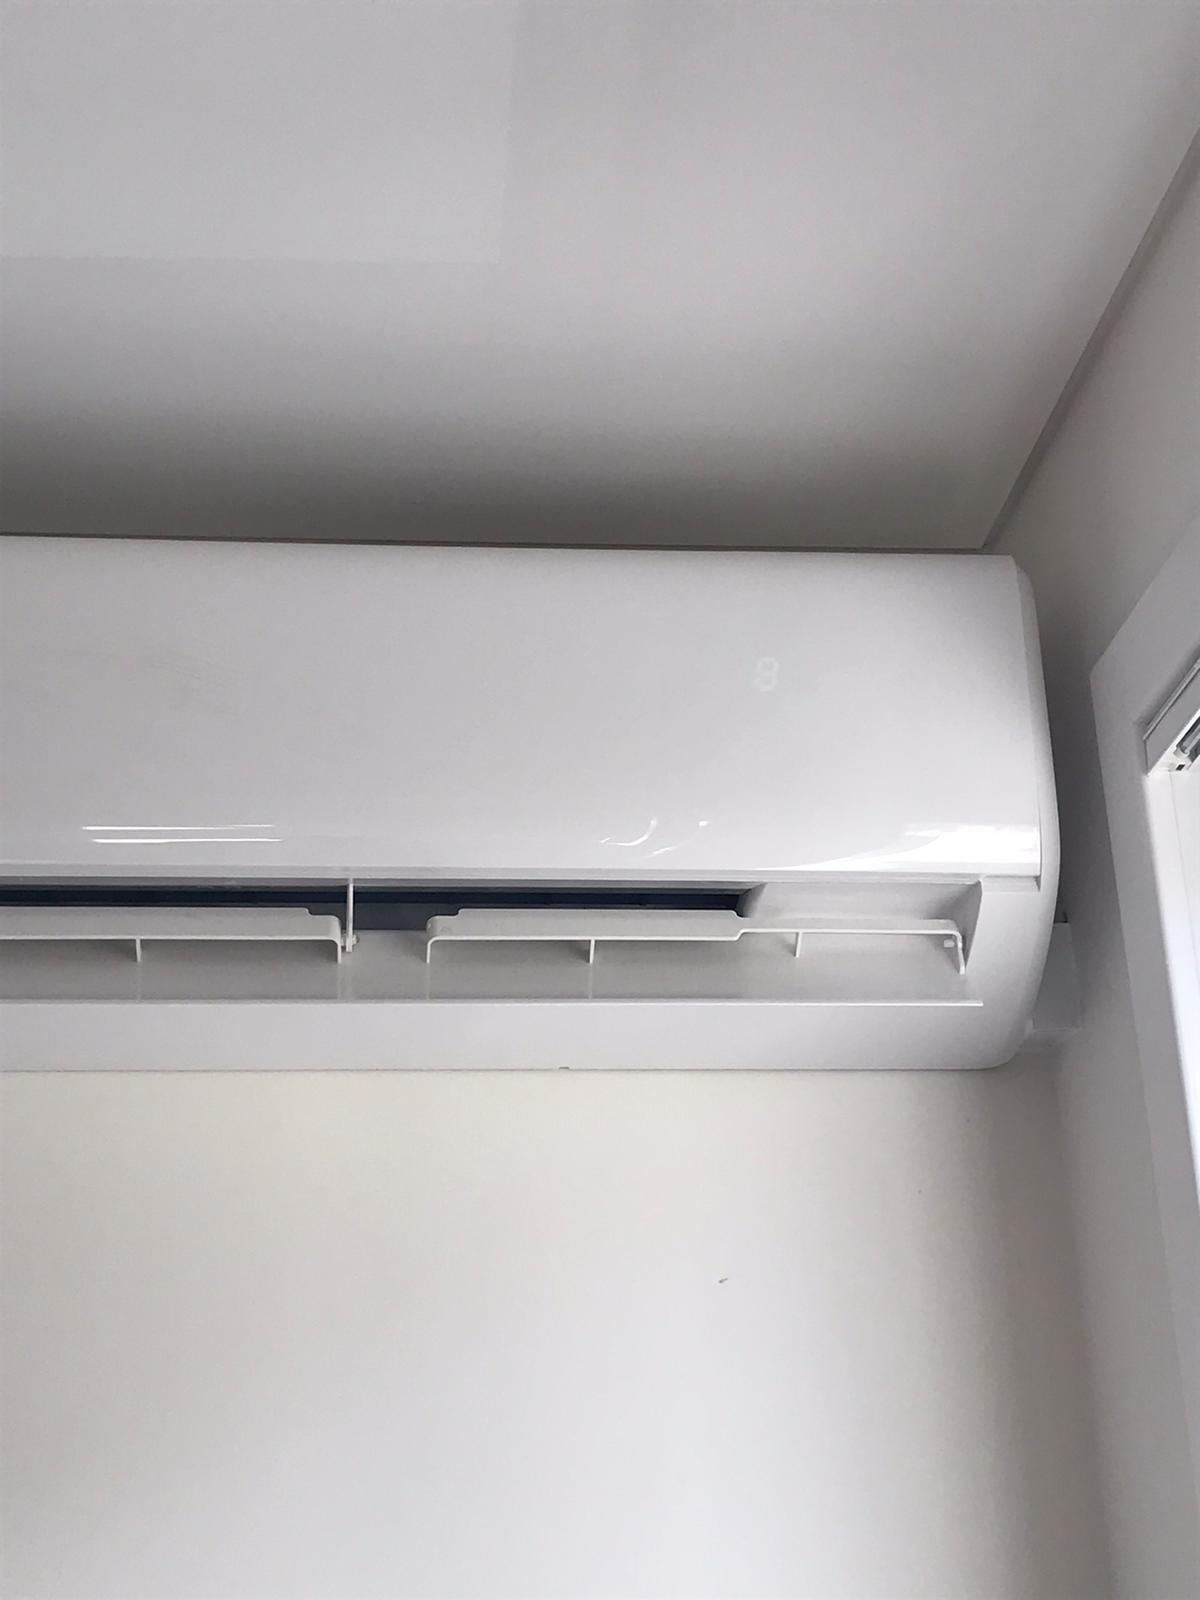 Installing split air conditioner